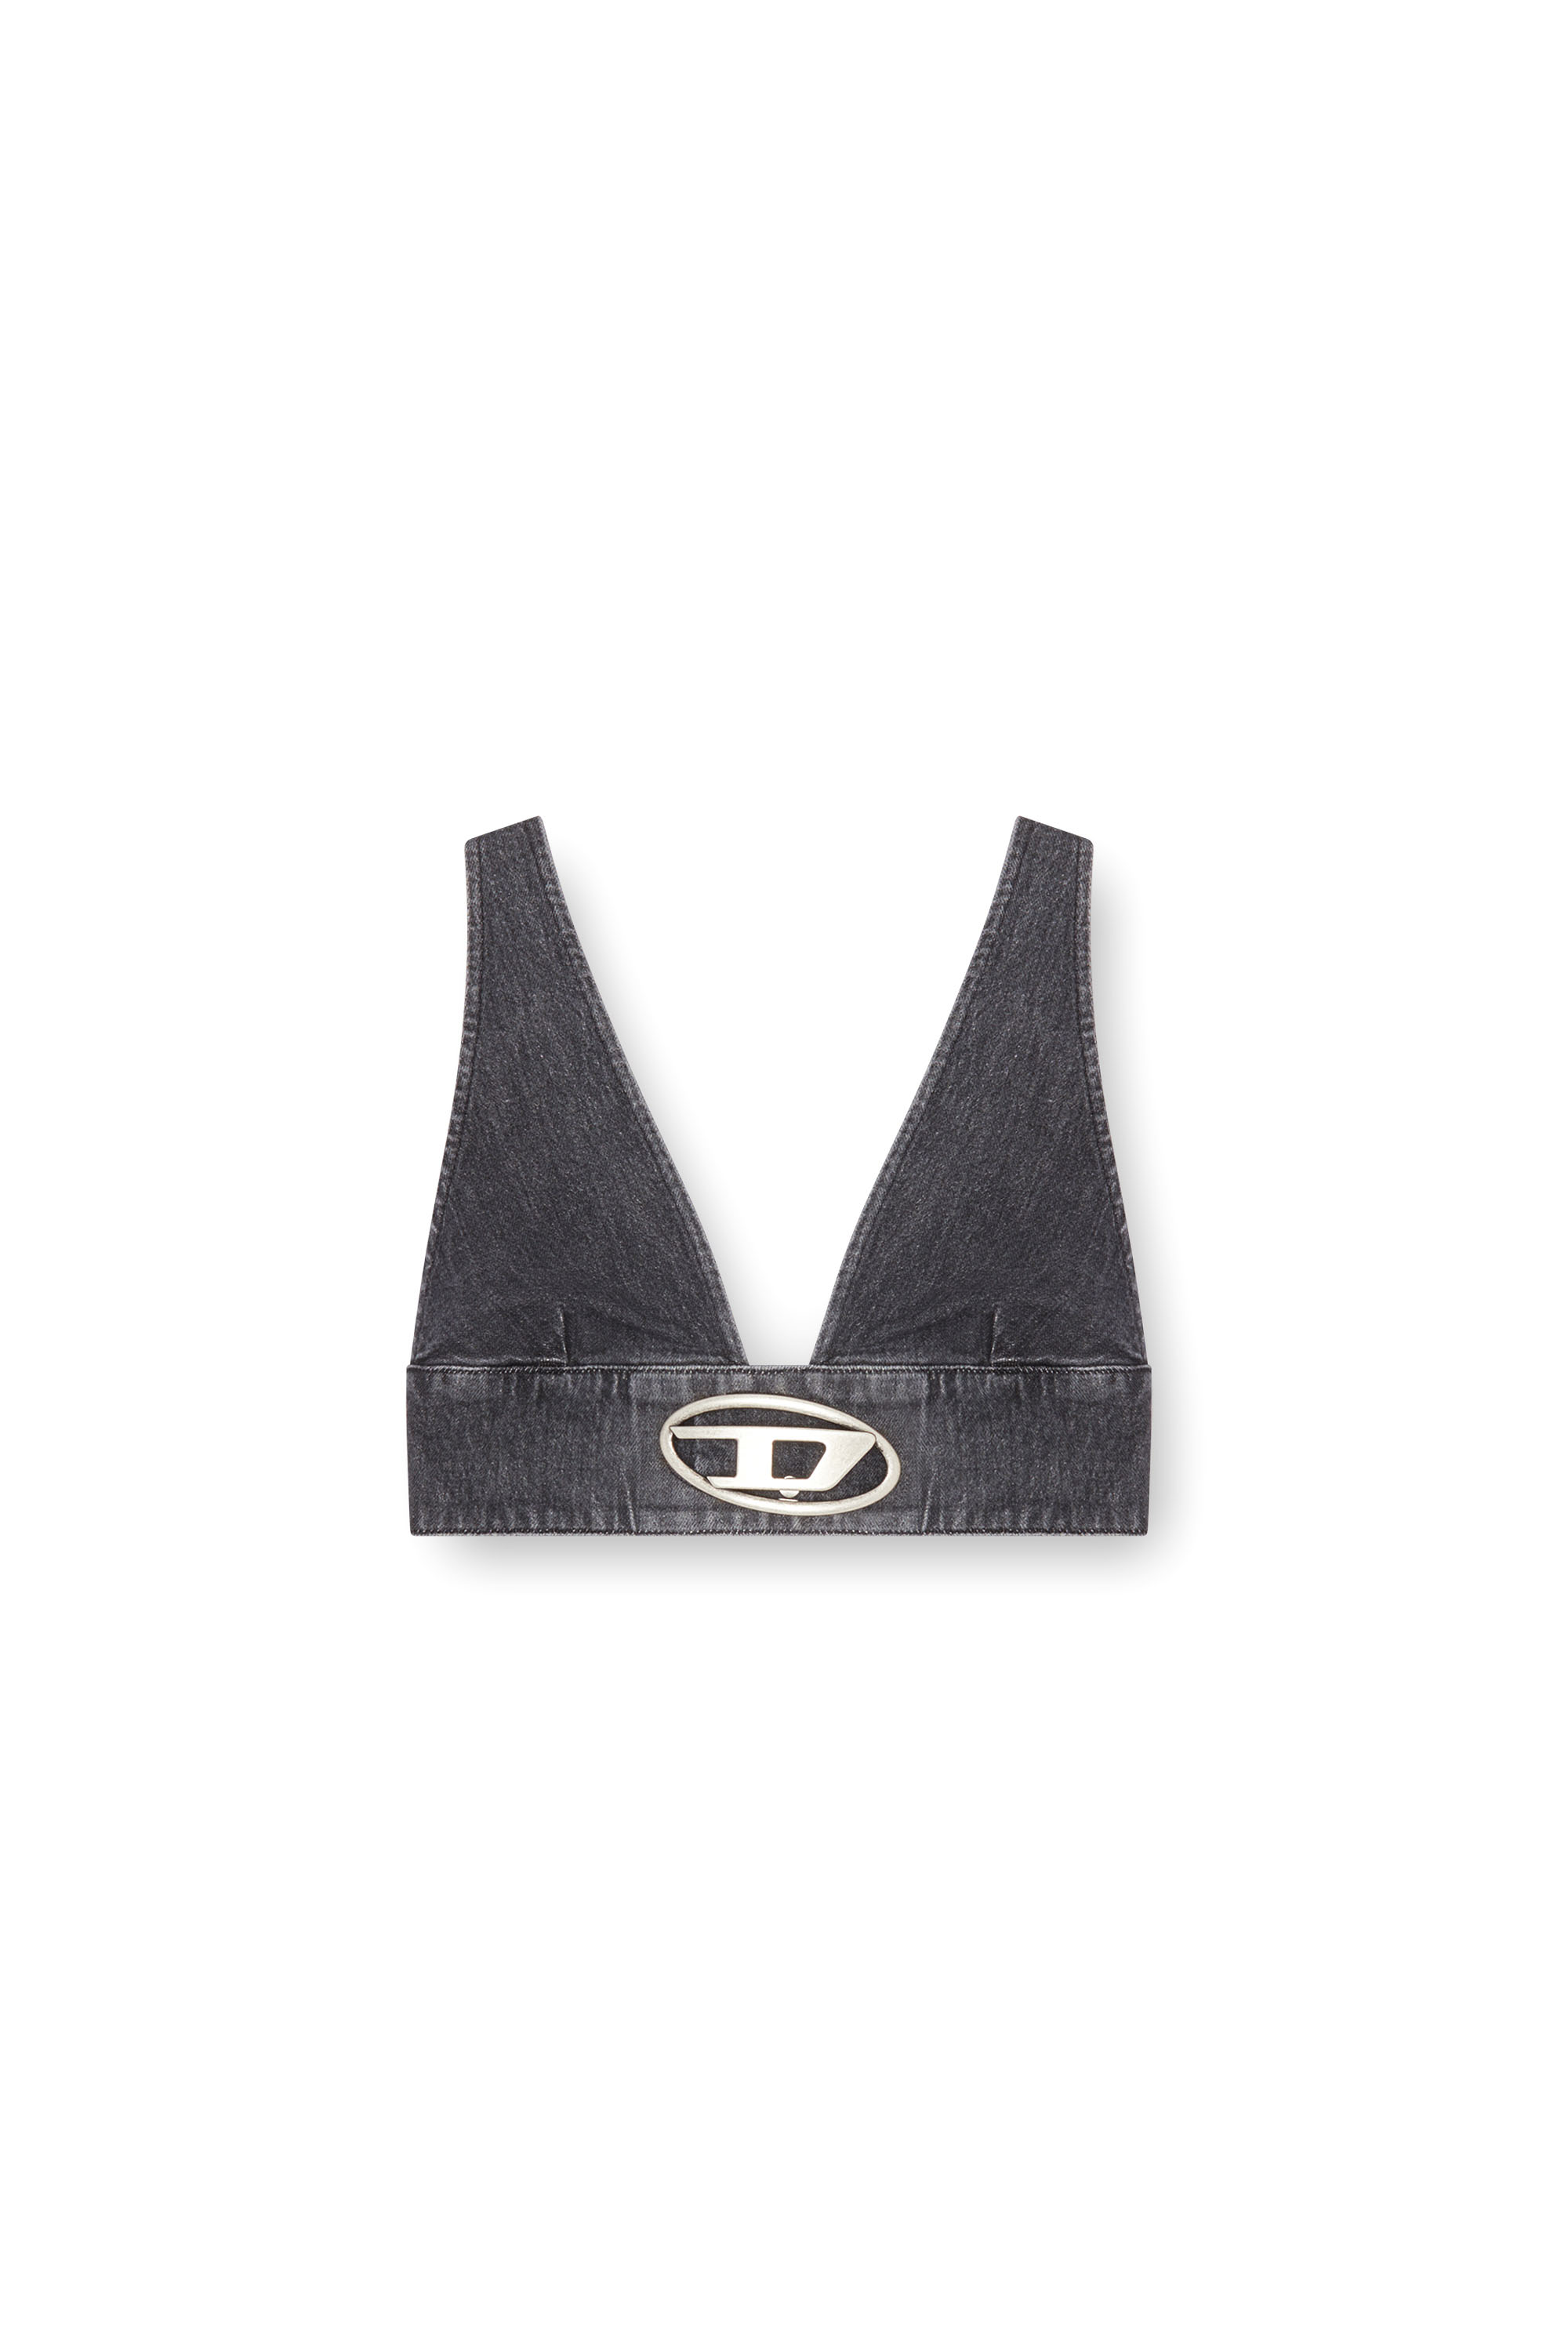 Diesel - DE-ELLY-S, Mujer Sujetador top en denim con placa Oval D in Negro - Image 4